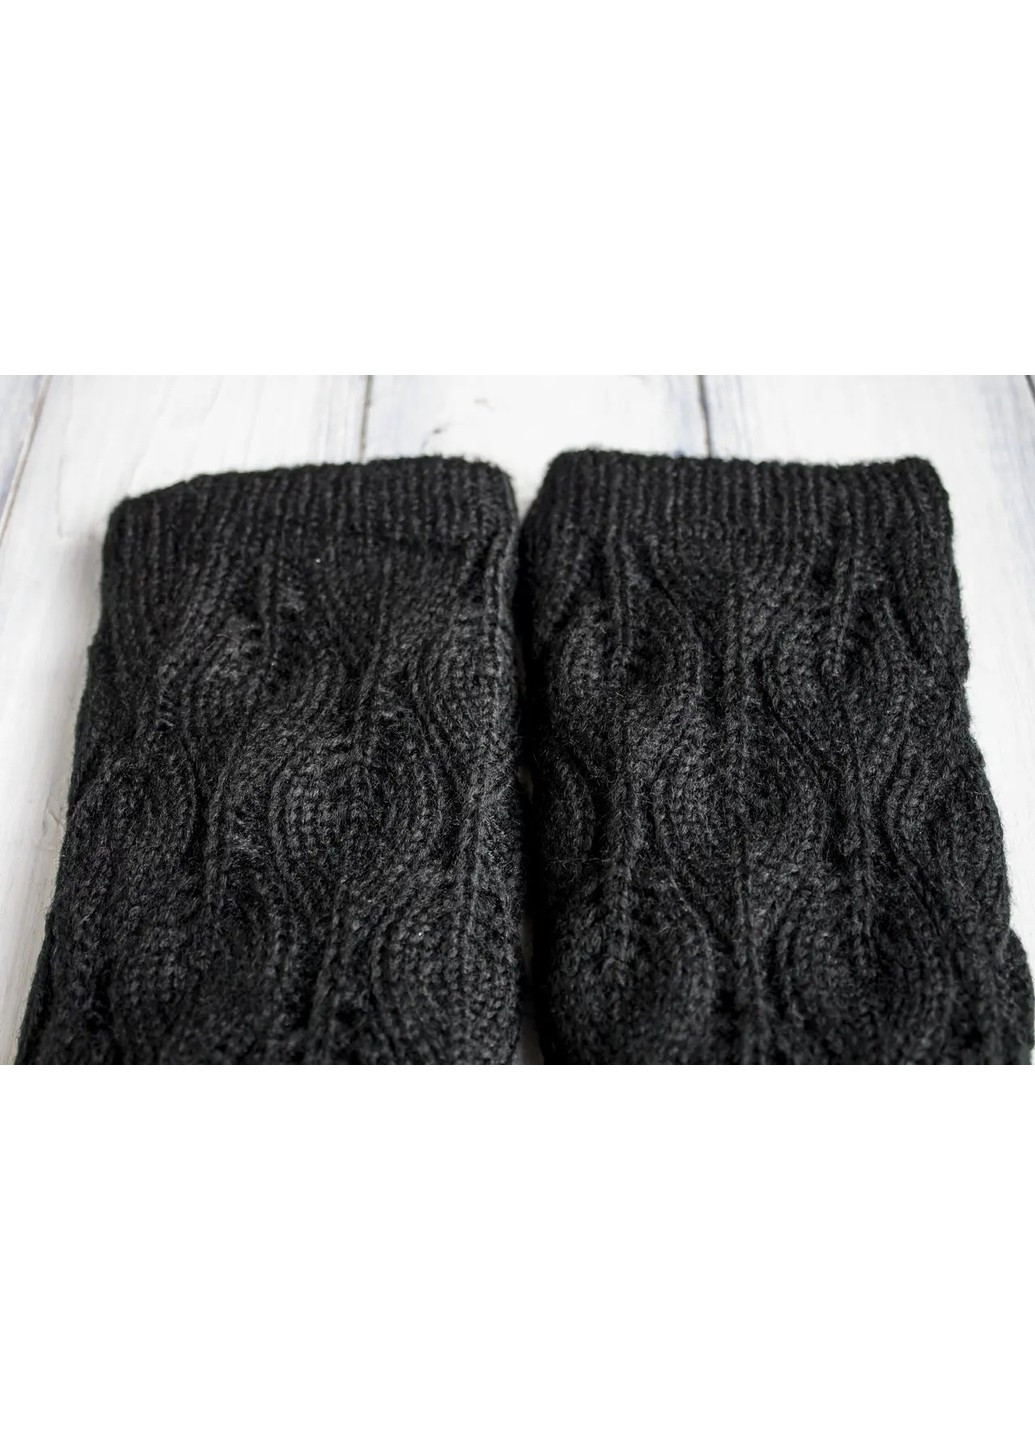 6,5 - Жіночі зимові чорні рукавички BR-S (266142891)